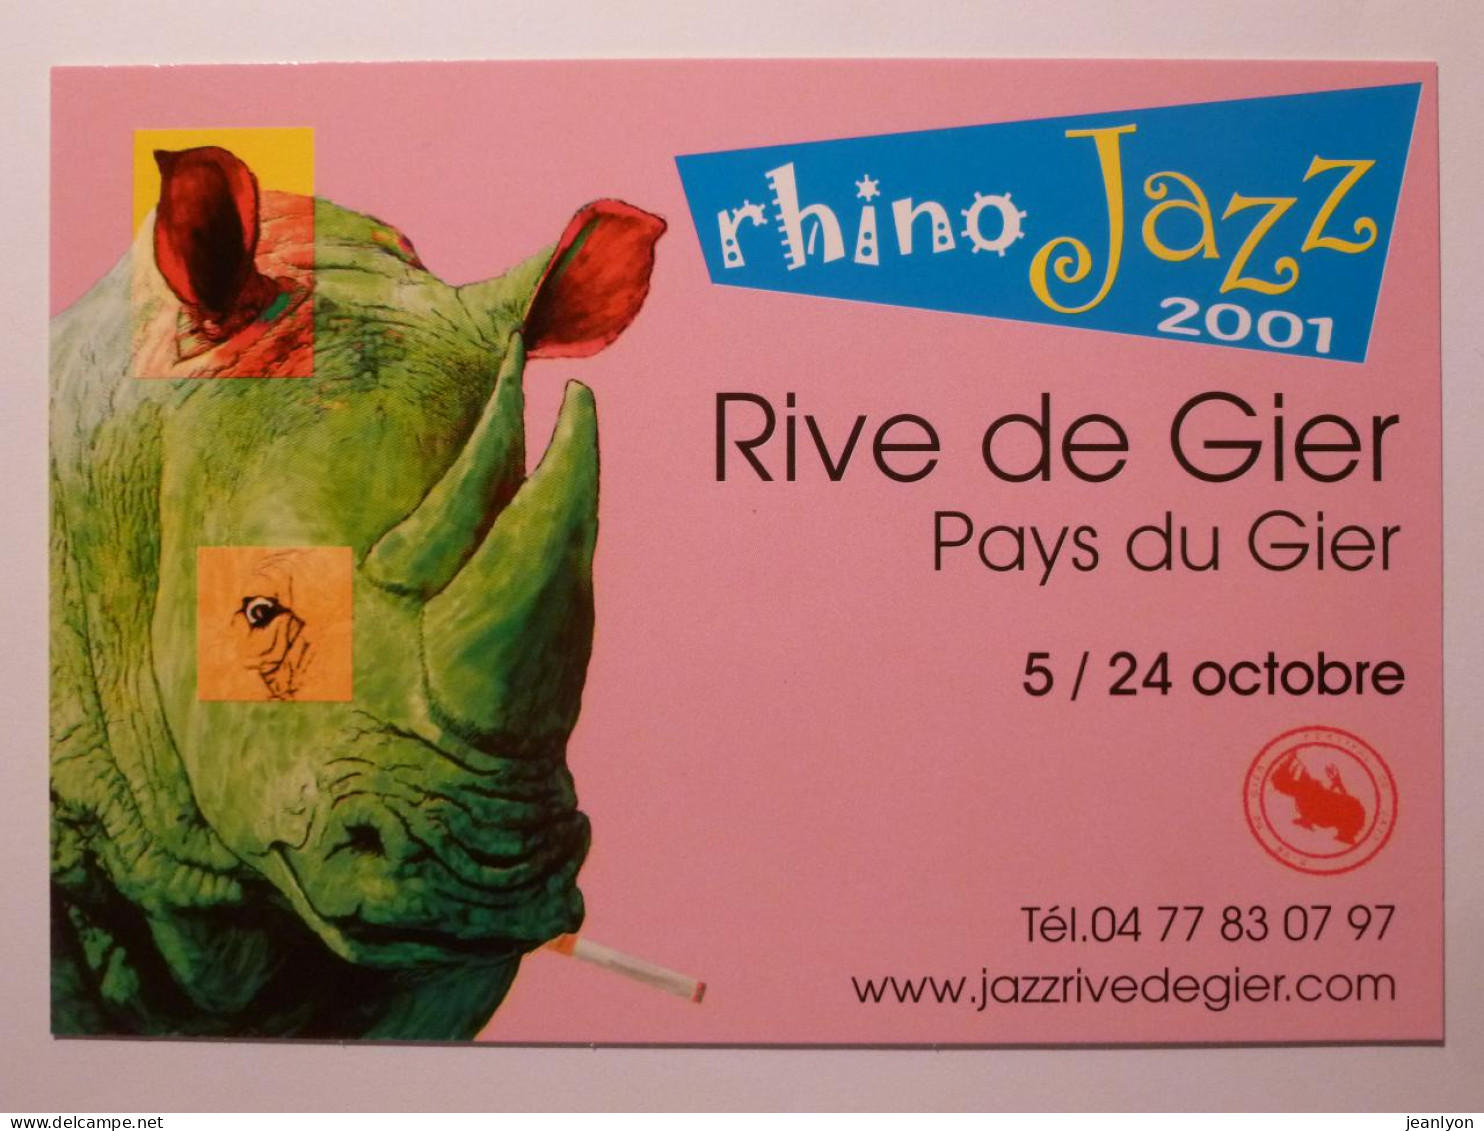 RHINOCEROS VERT Avec Cigarette Dans La Bouche - Rhino Jazz 2001 - Rive De Gier ( Loire ) - Carte Publicitaire - Neushoorn